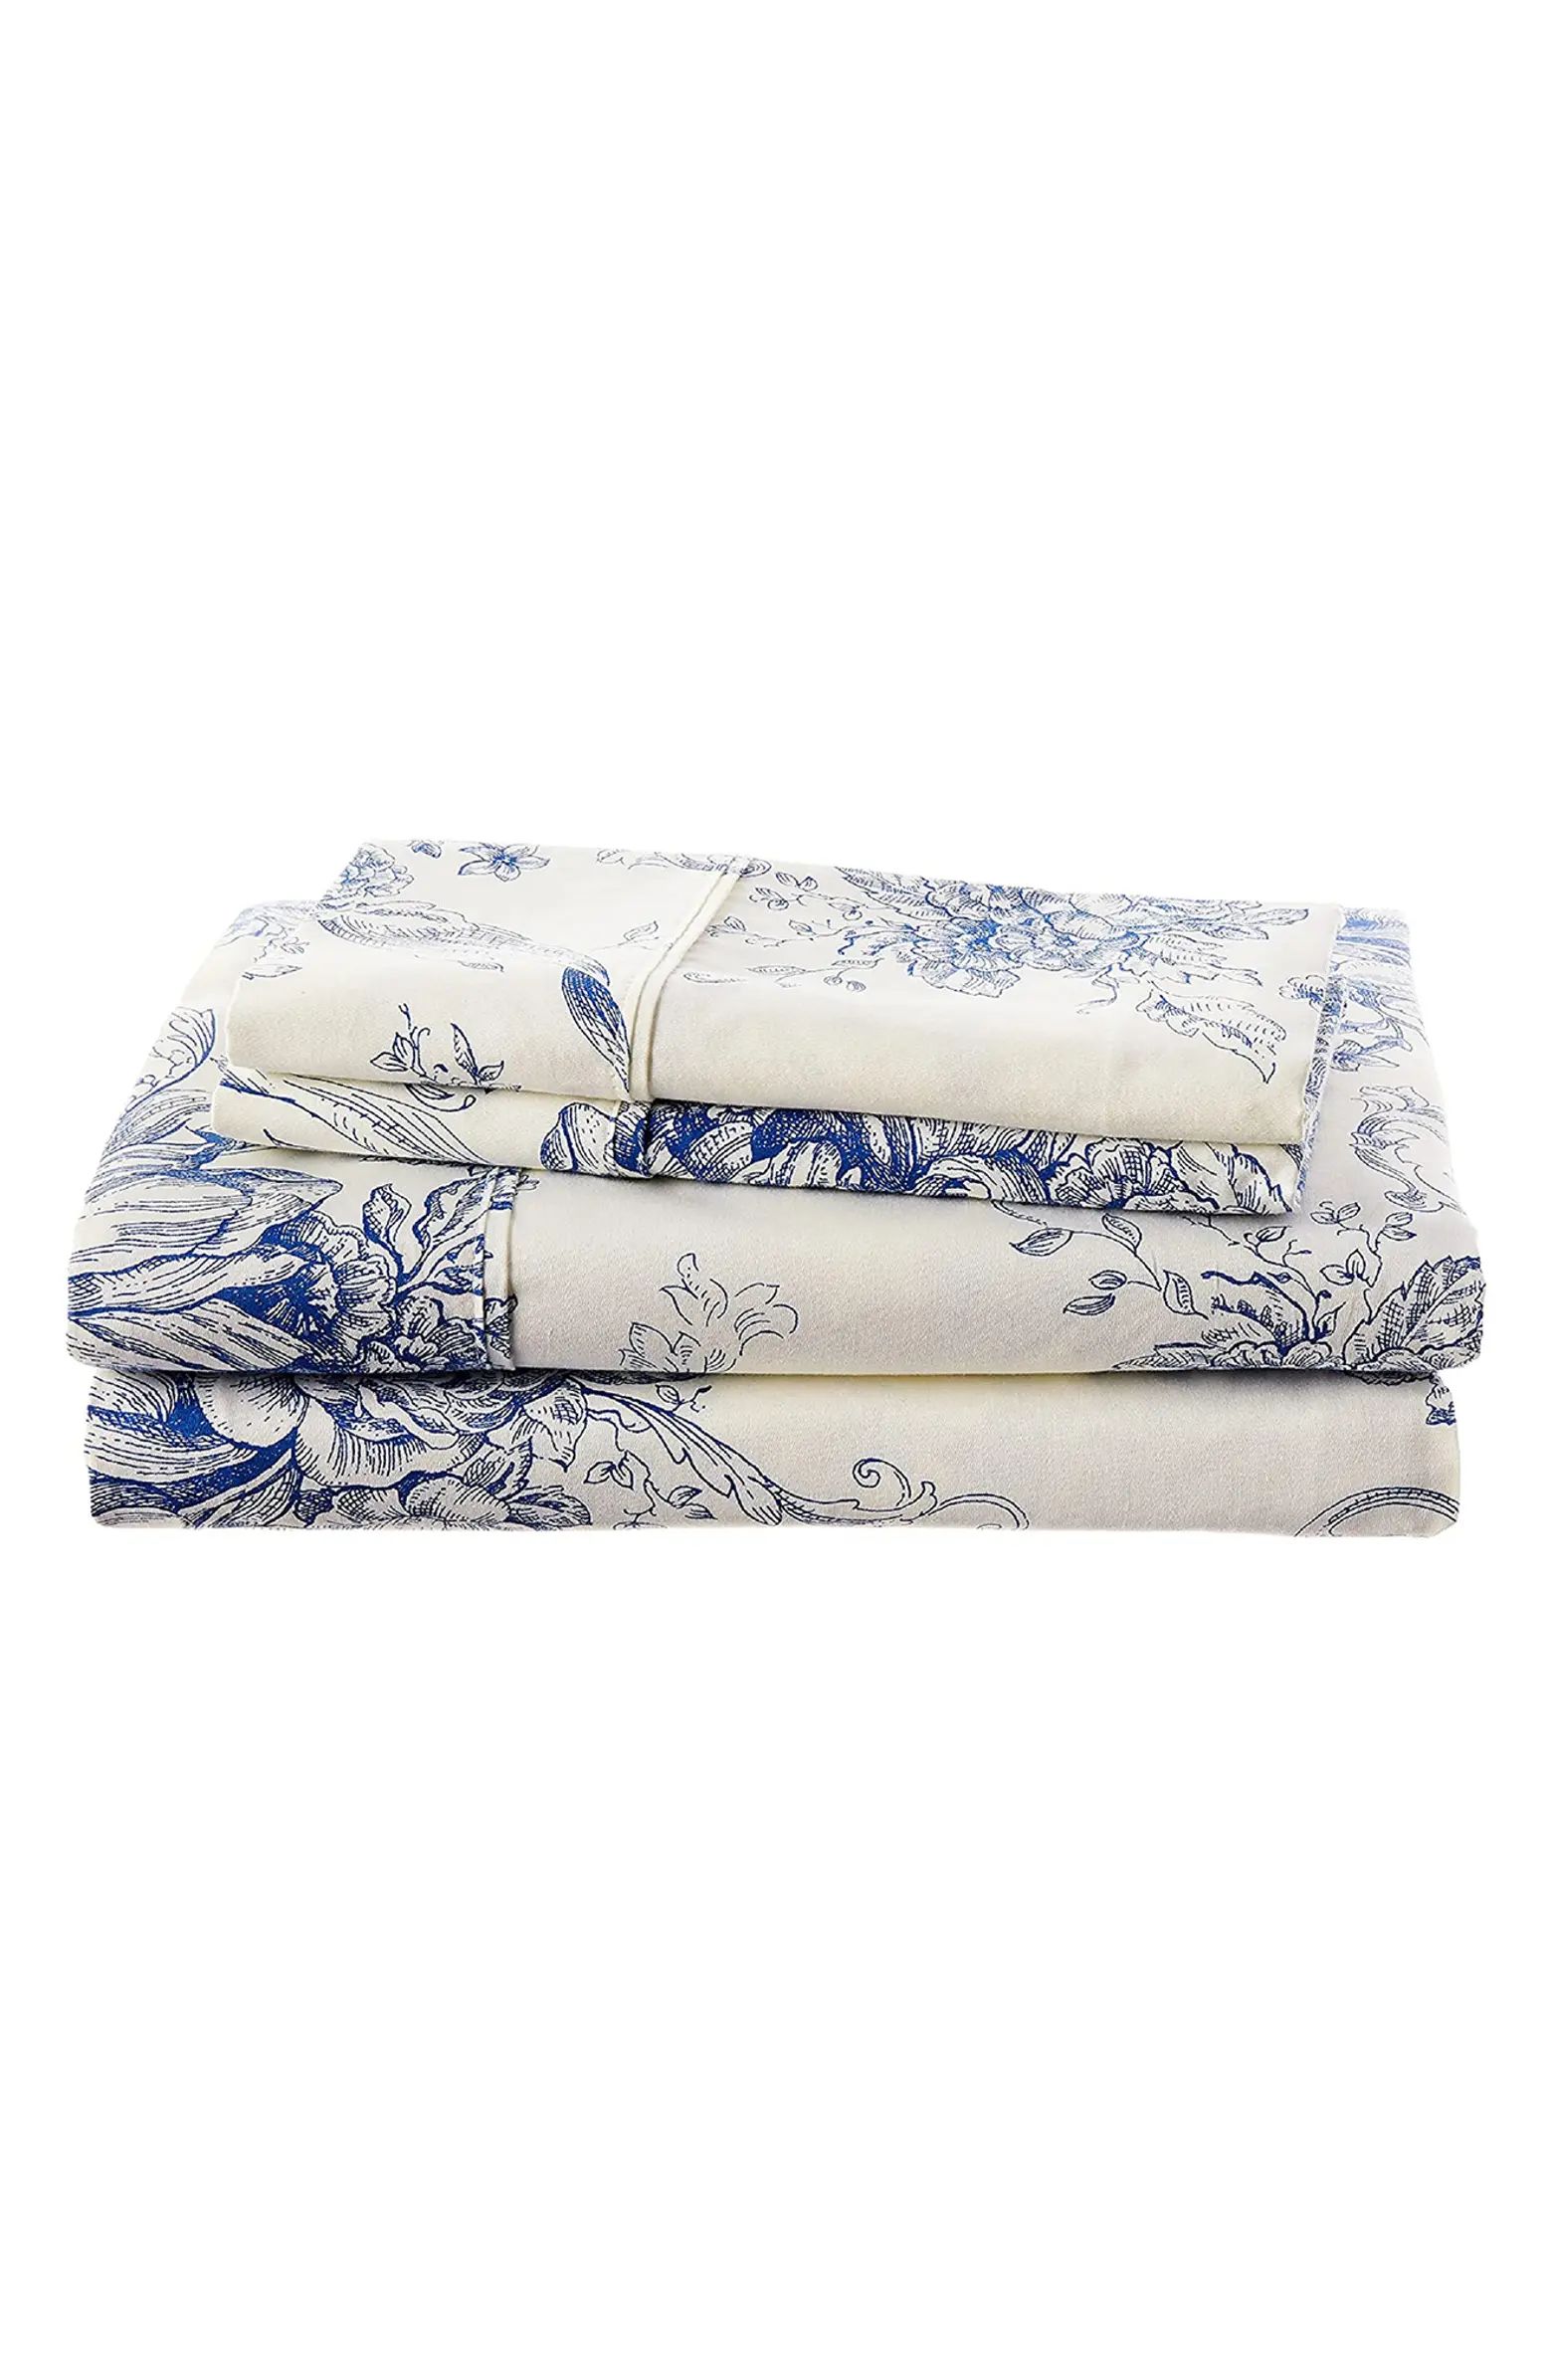 MELANGE HOME Toile Print 400 Thread Count Cotton Sheet Set | Nordstromrack | Nordstrom Rack